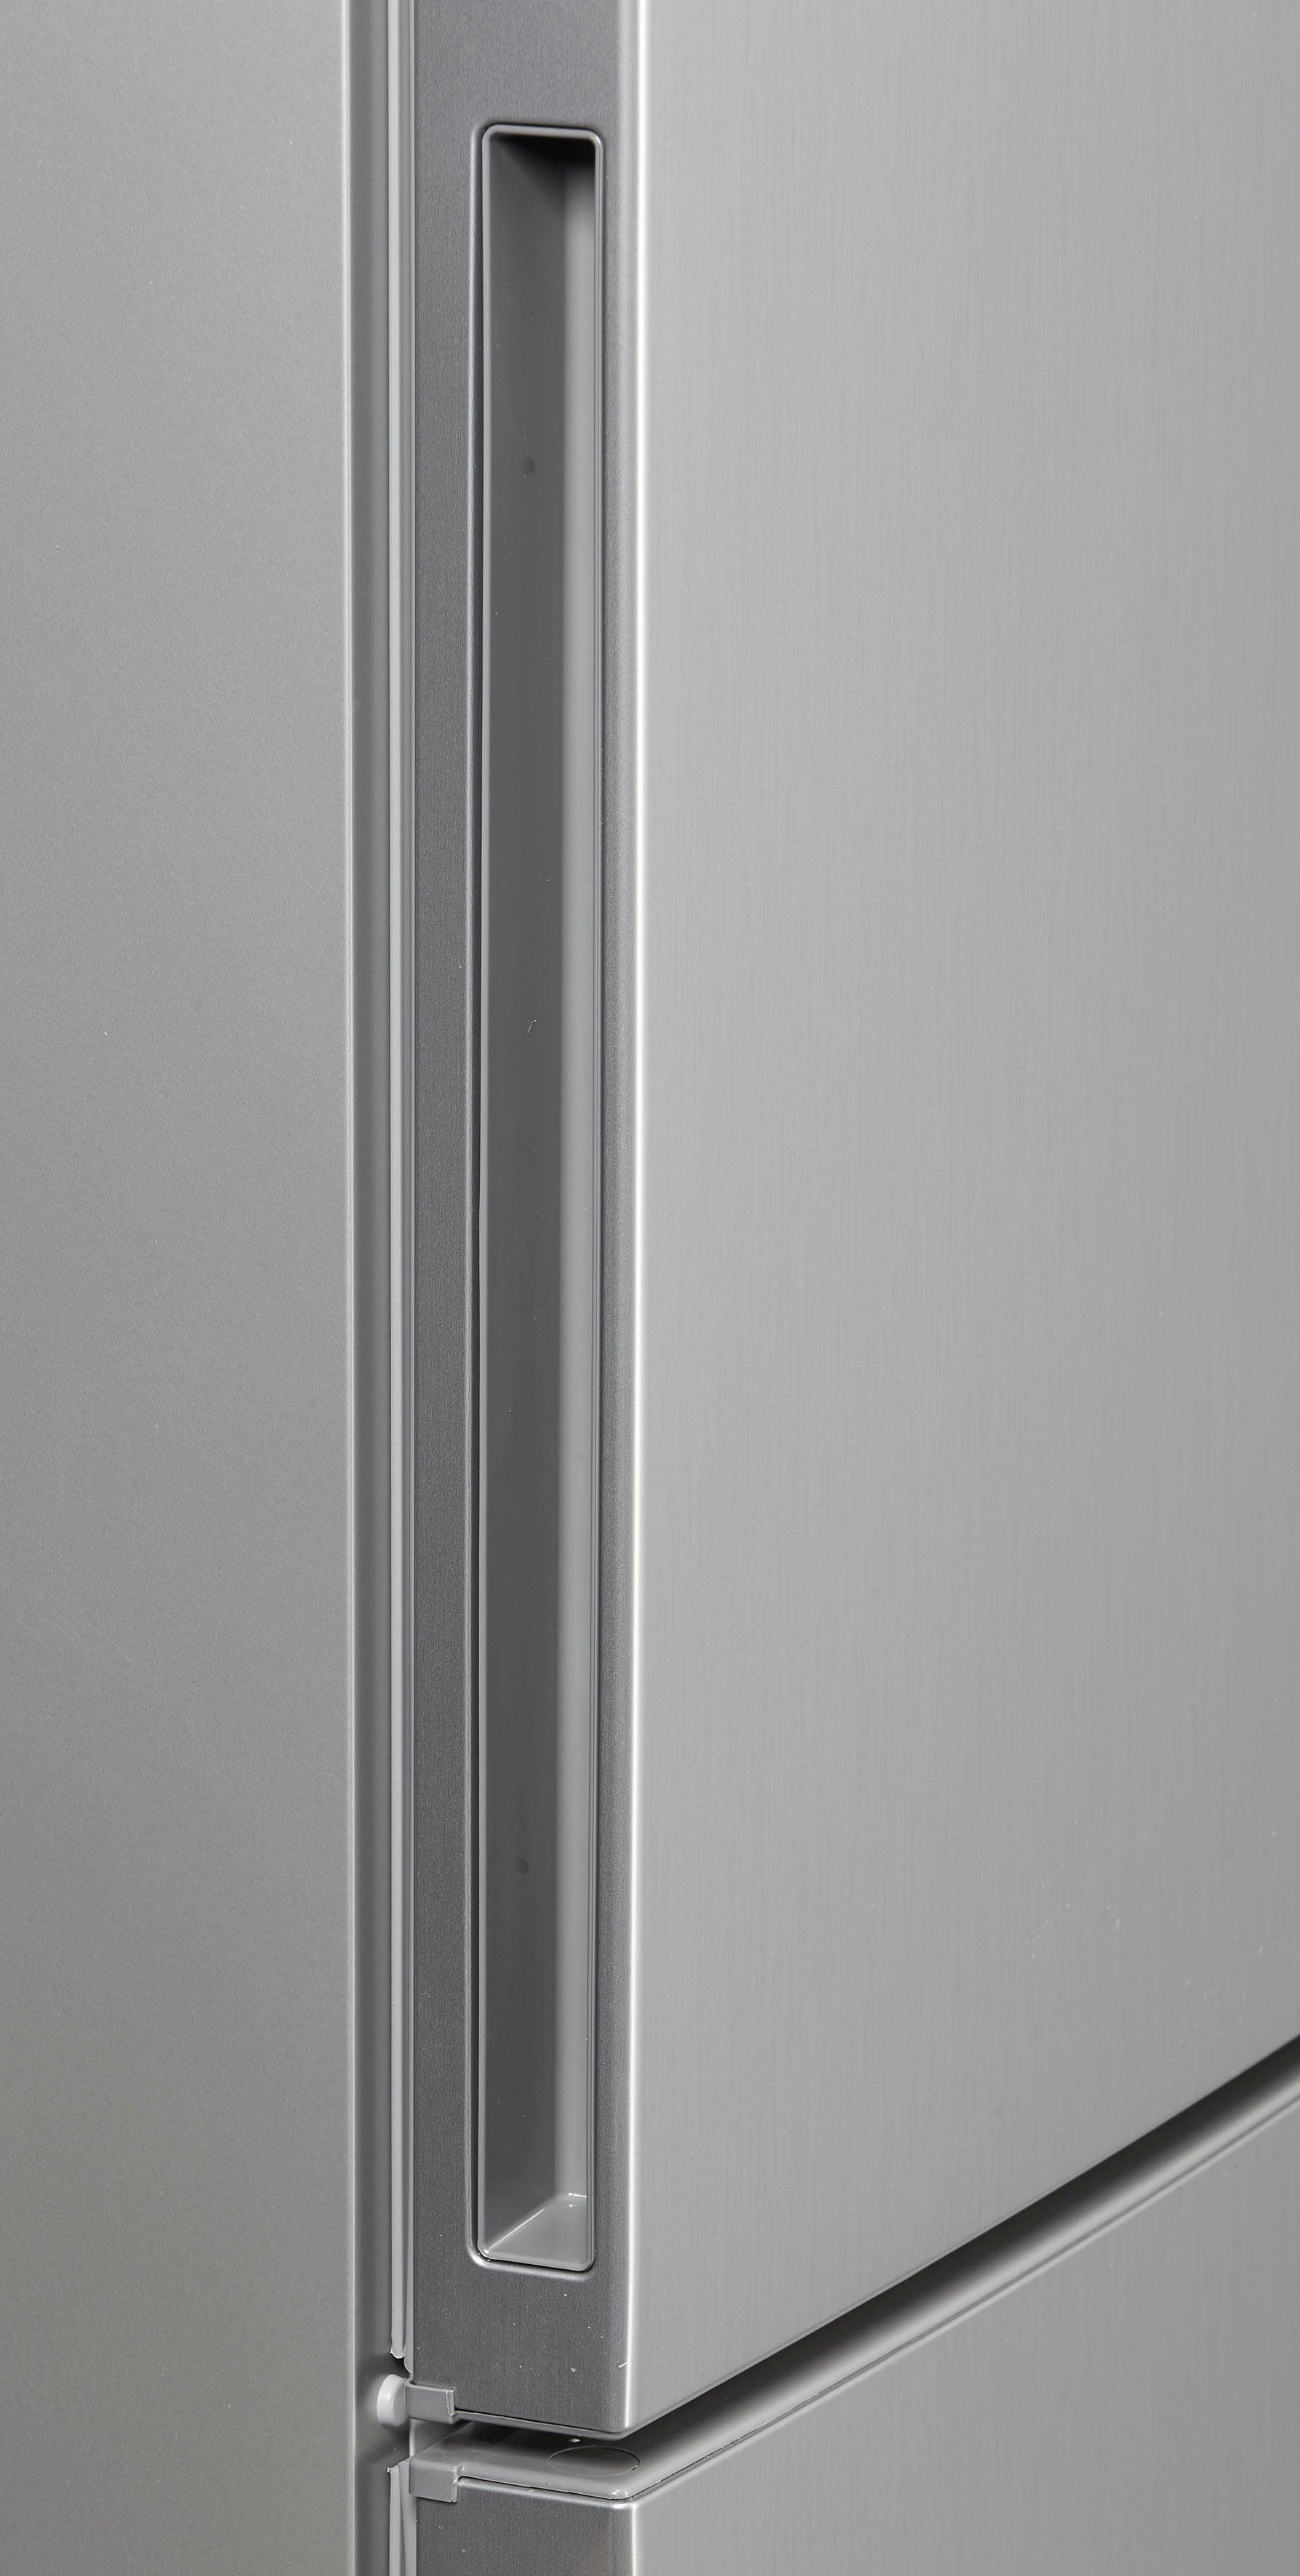 BOSCH Kühl-/Gefrierkombination Edelstahl Anti-Fingerprint hoch, cm 186 60 cm breit mit KGE36AICA